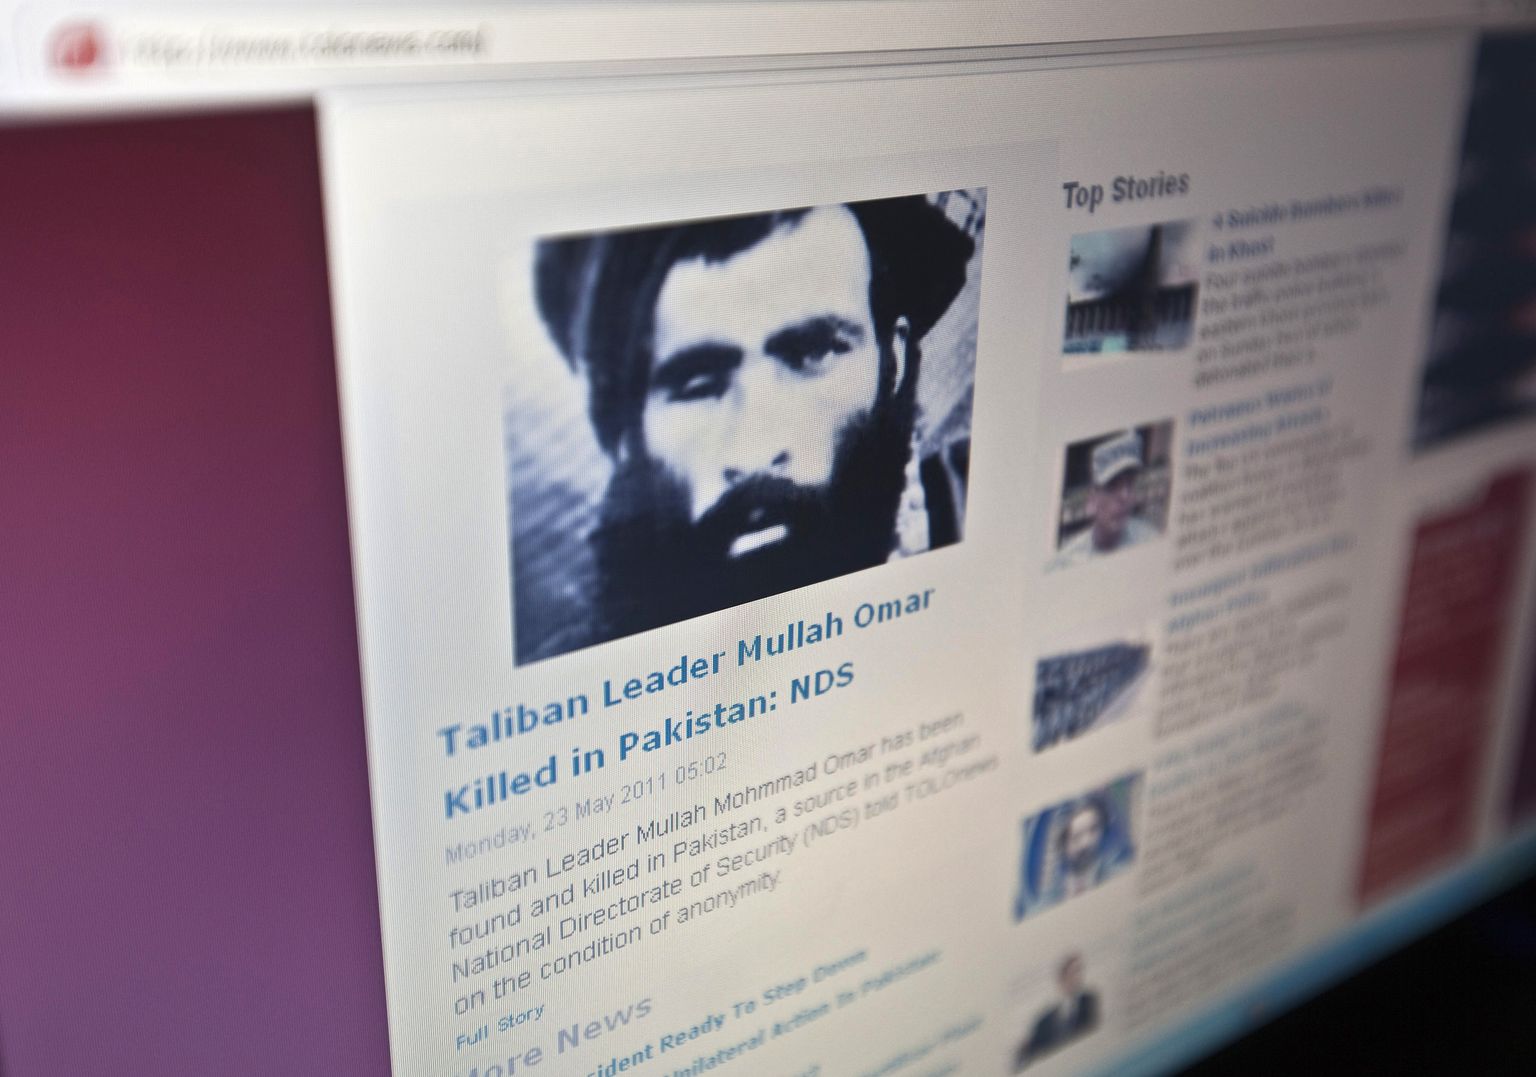 Uudistelehekülg Tolonews teatas 23. mail 2011, et Talibani liider mulla Mohammad Omar tapeti Pakistanis. Taliban eitas liidri surma ja teatas, et Omar on Afganistanis ja jätkab võitlust